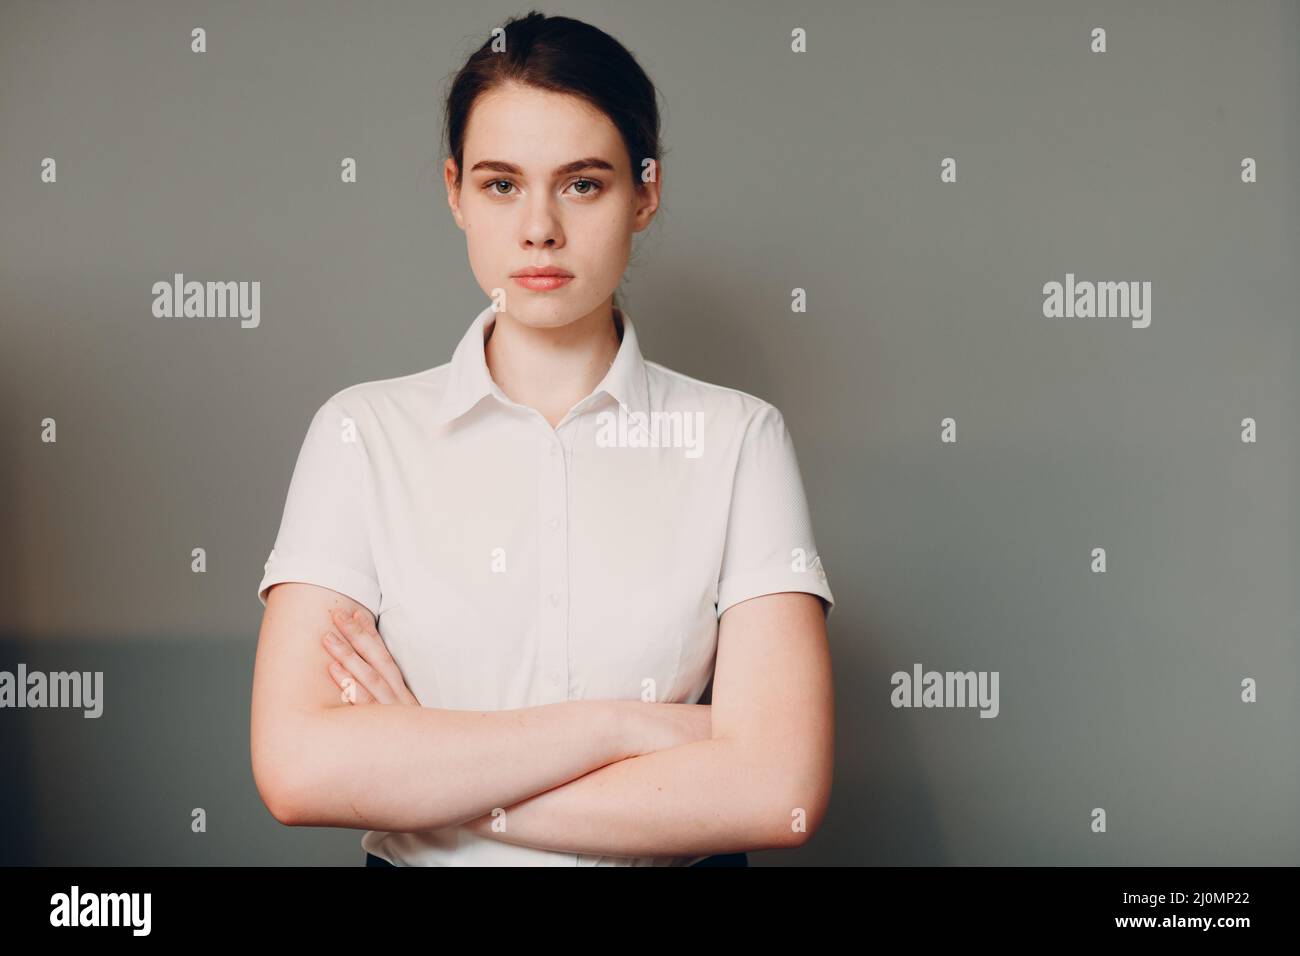 Business junge Frau 20 25 Jahre alt Porträt in weißem Hemd im Büro stehen Stockfoto